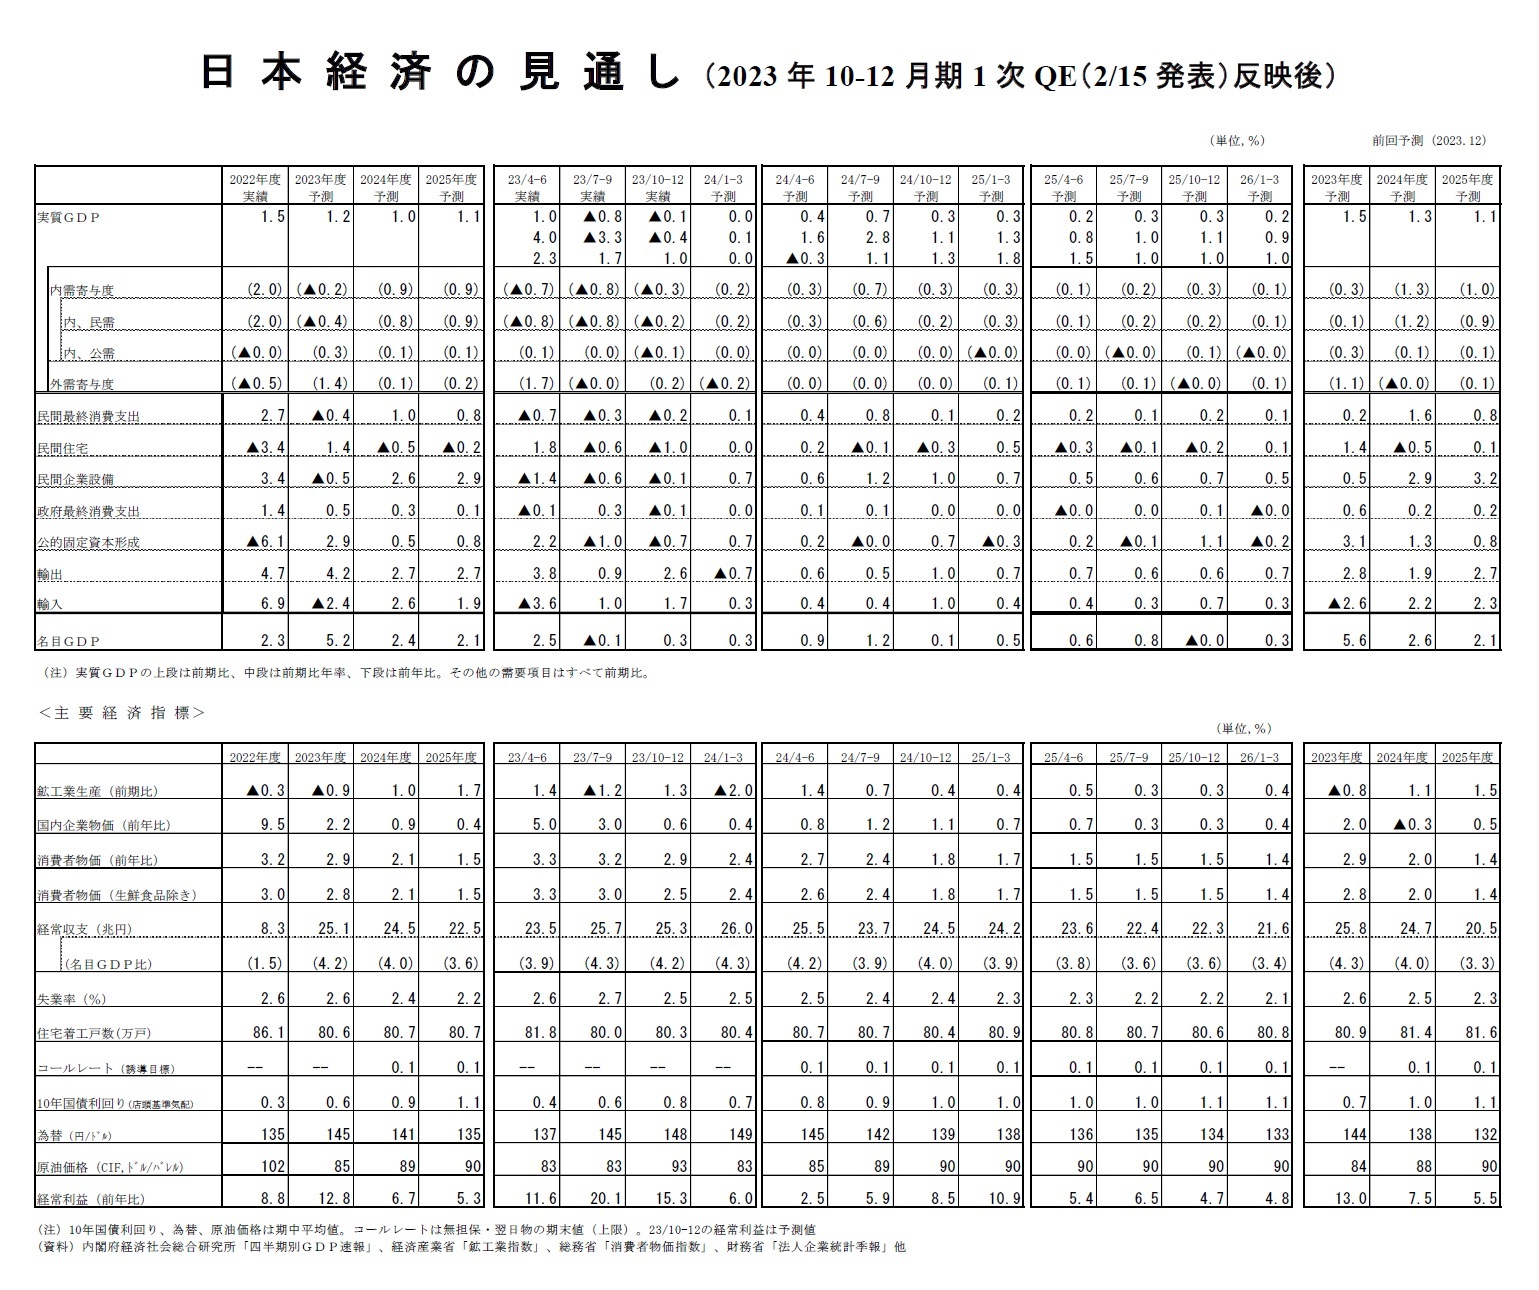 日本経済の見通し（2023年10-12月期1次QE（2/15発表）反映後）